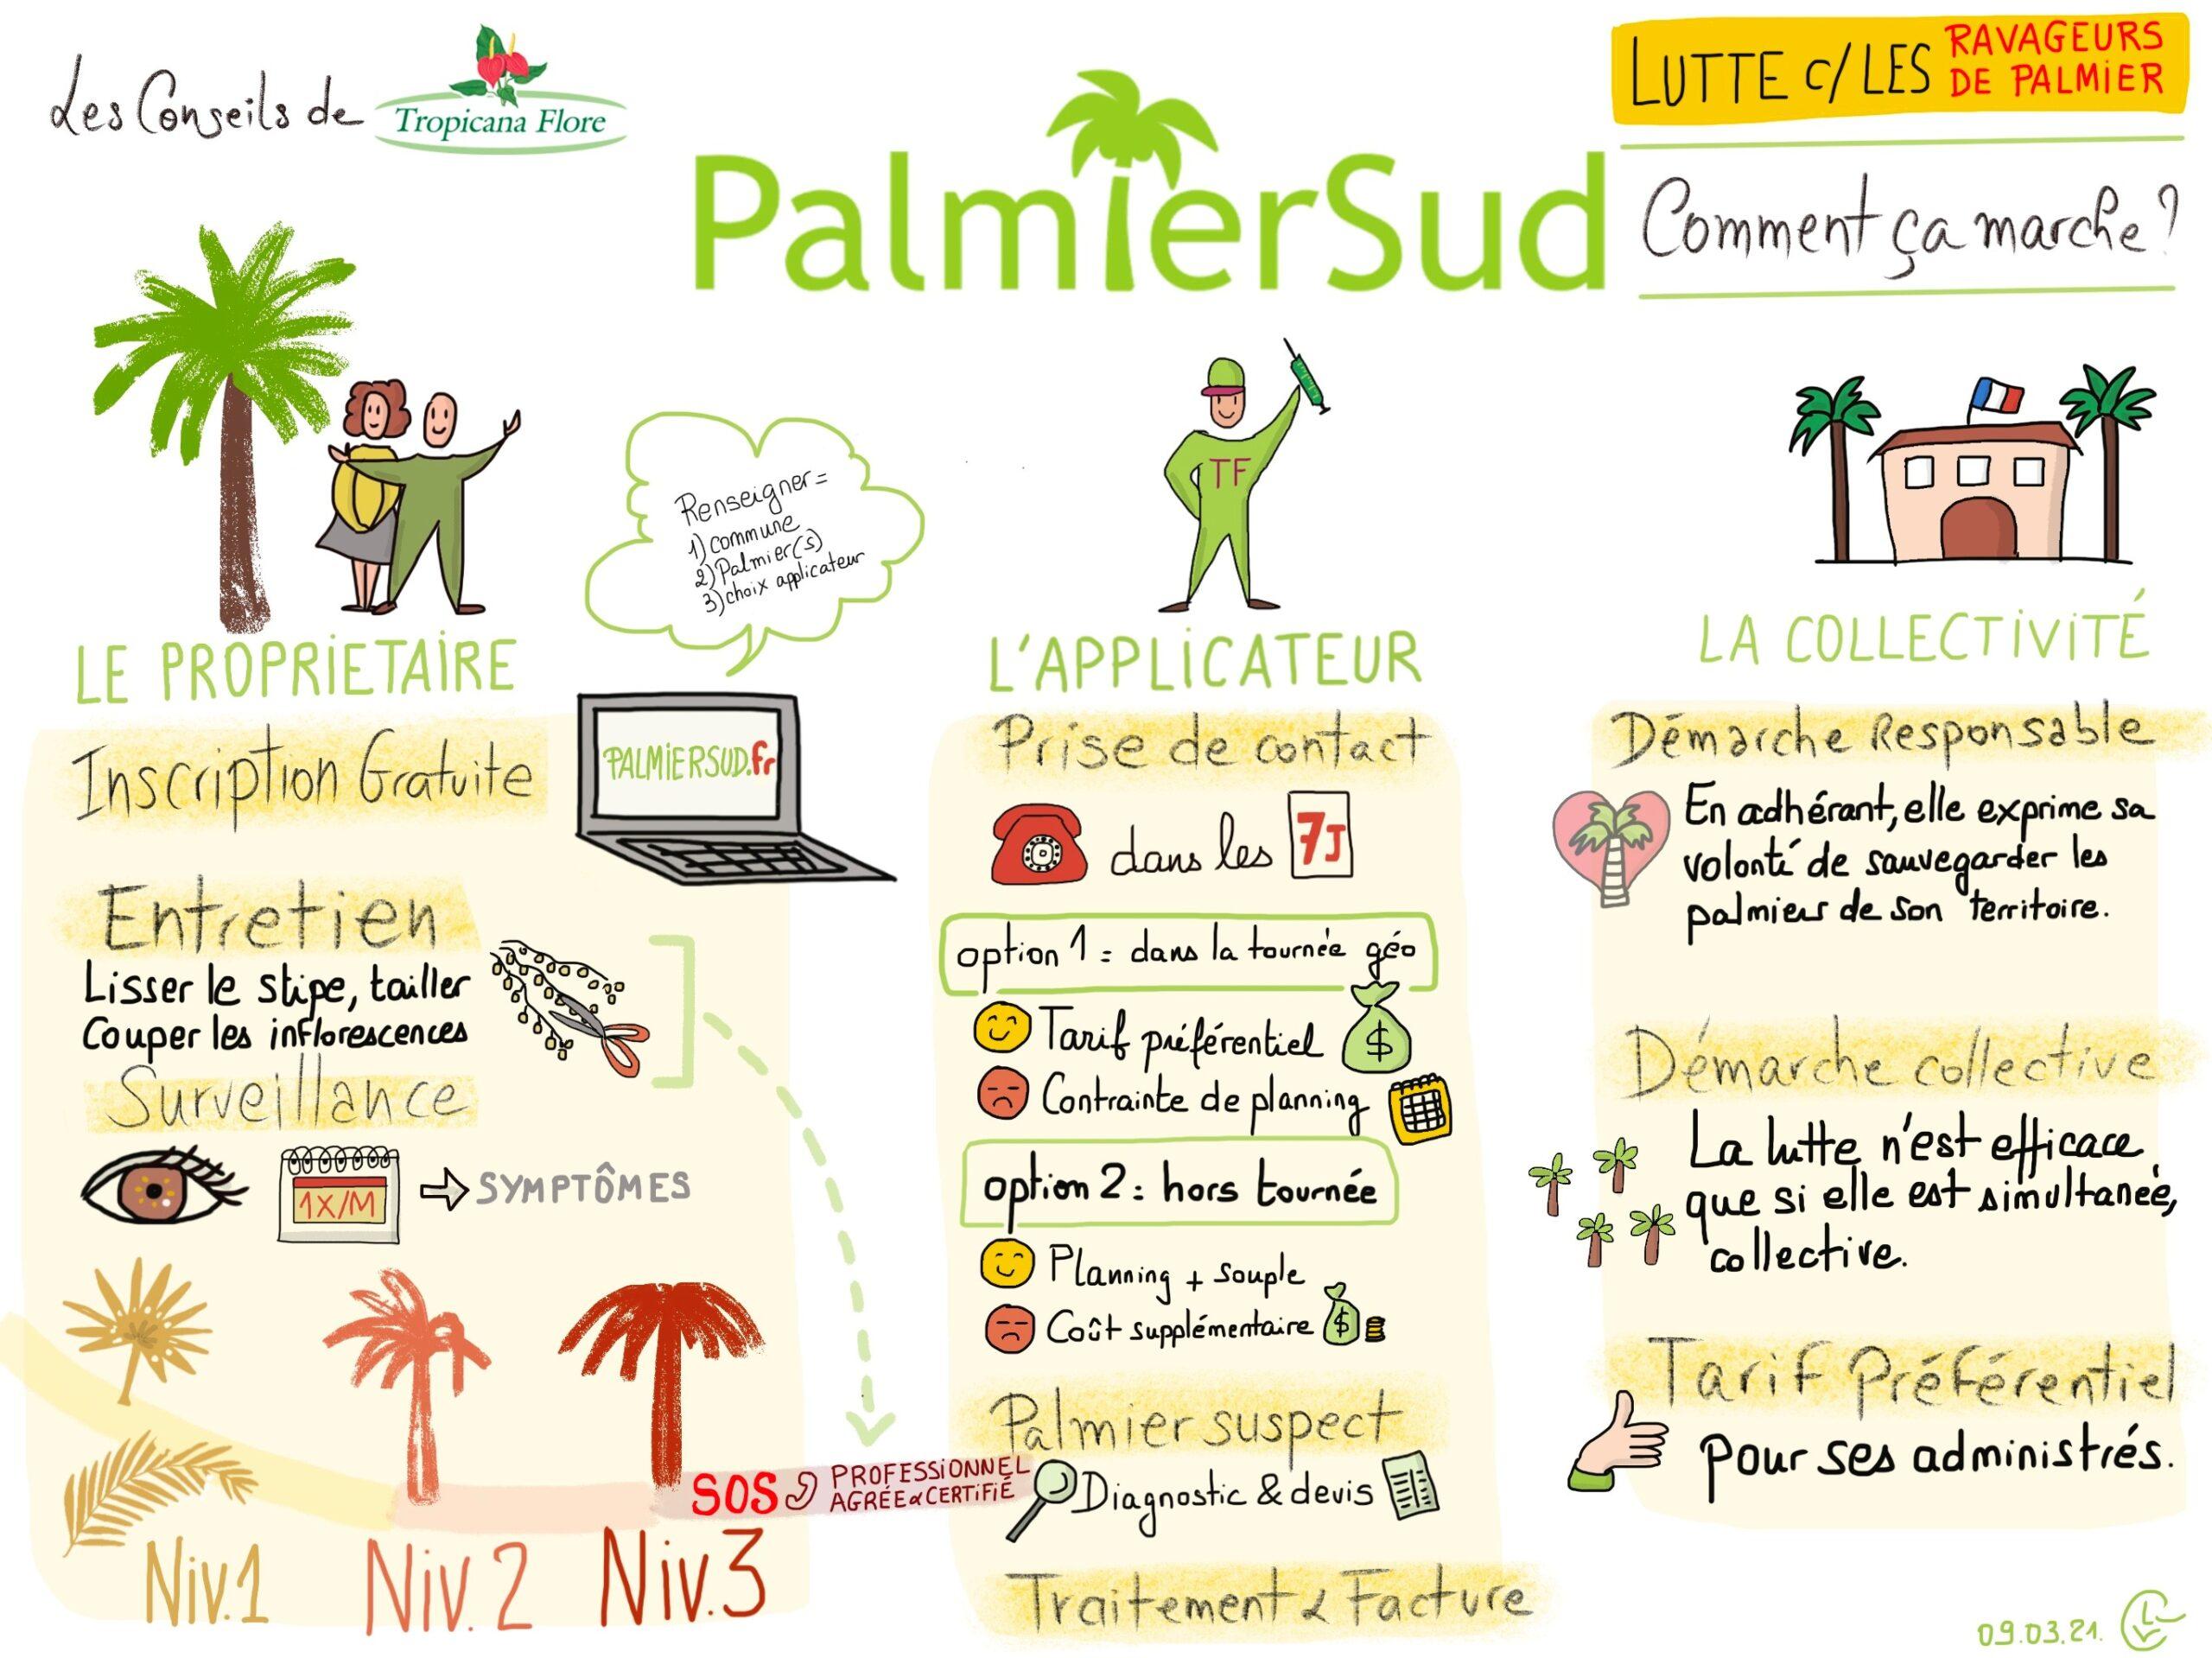 La lutte collective contre les ravageurs du palmier, contactez un professionnel pour un traitement et une intervention adaptée